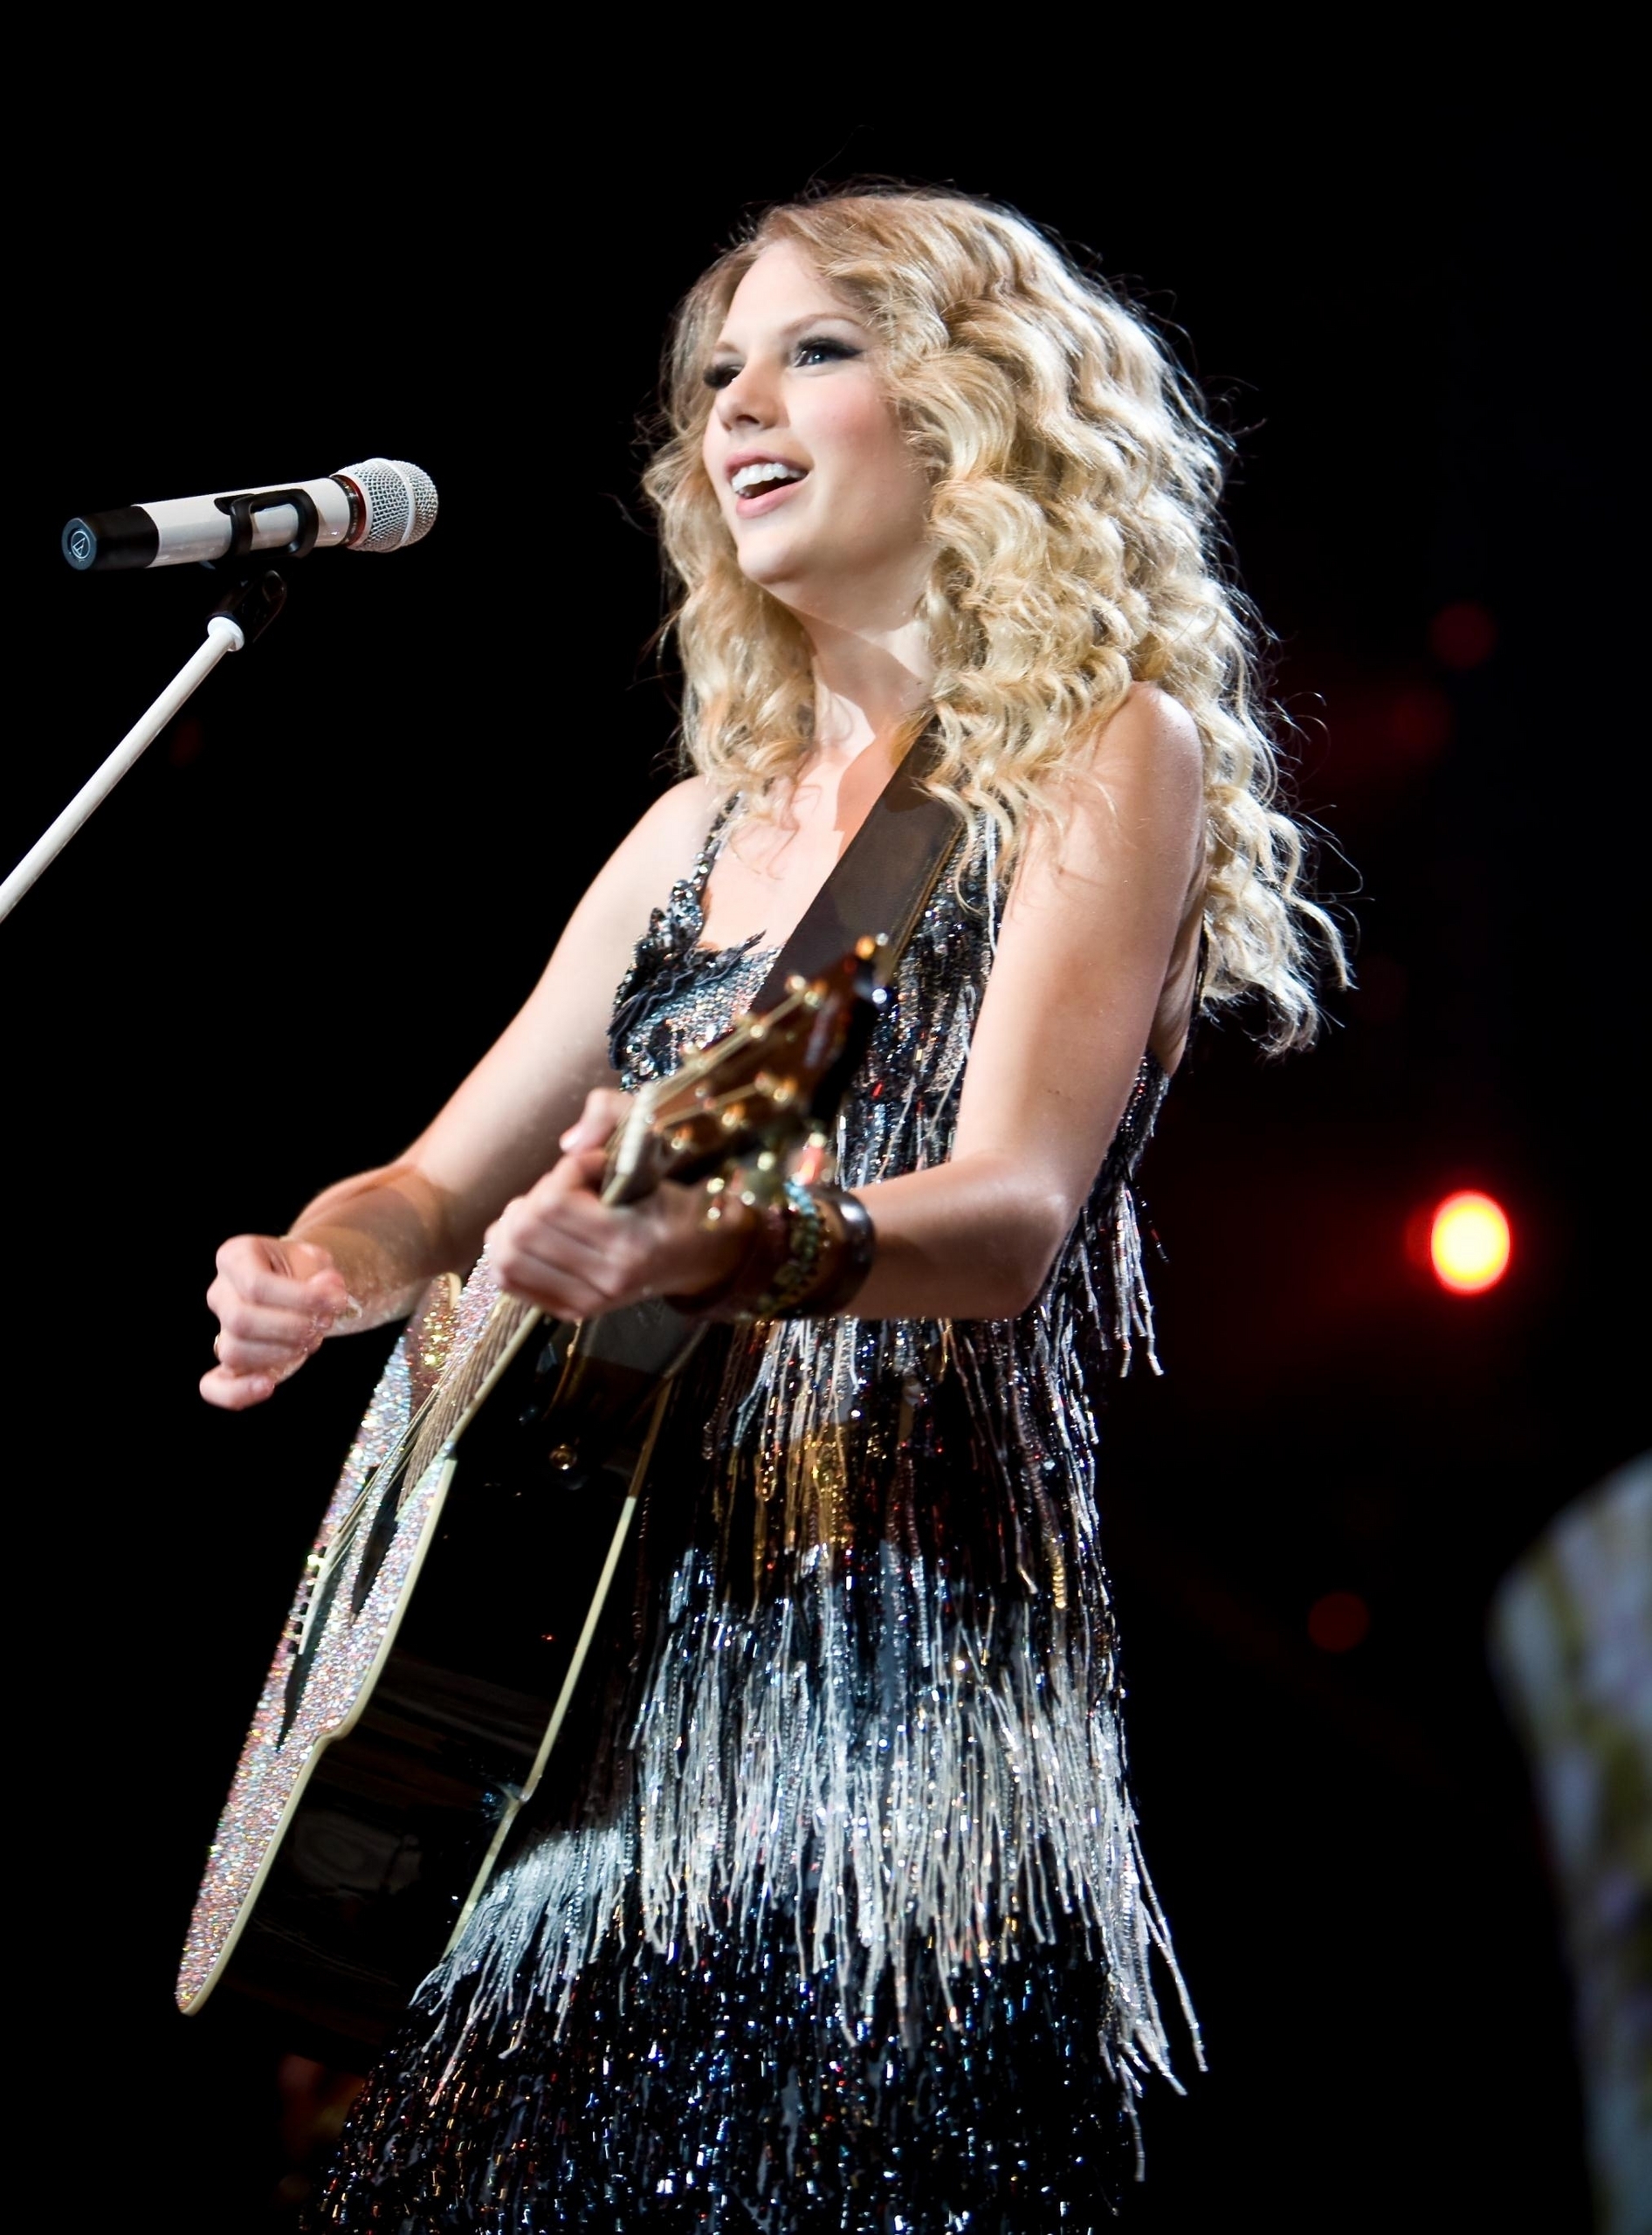 Taylor Swift - Photoshoot #101: Fearless Tour (2009) - Anichu90 Photo (17989280) - Fanpop1892 x 2560